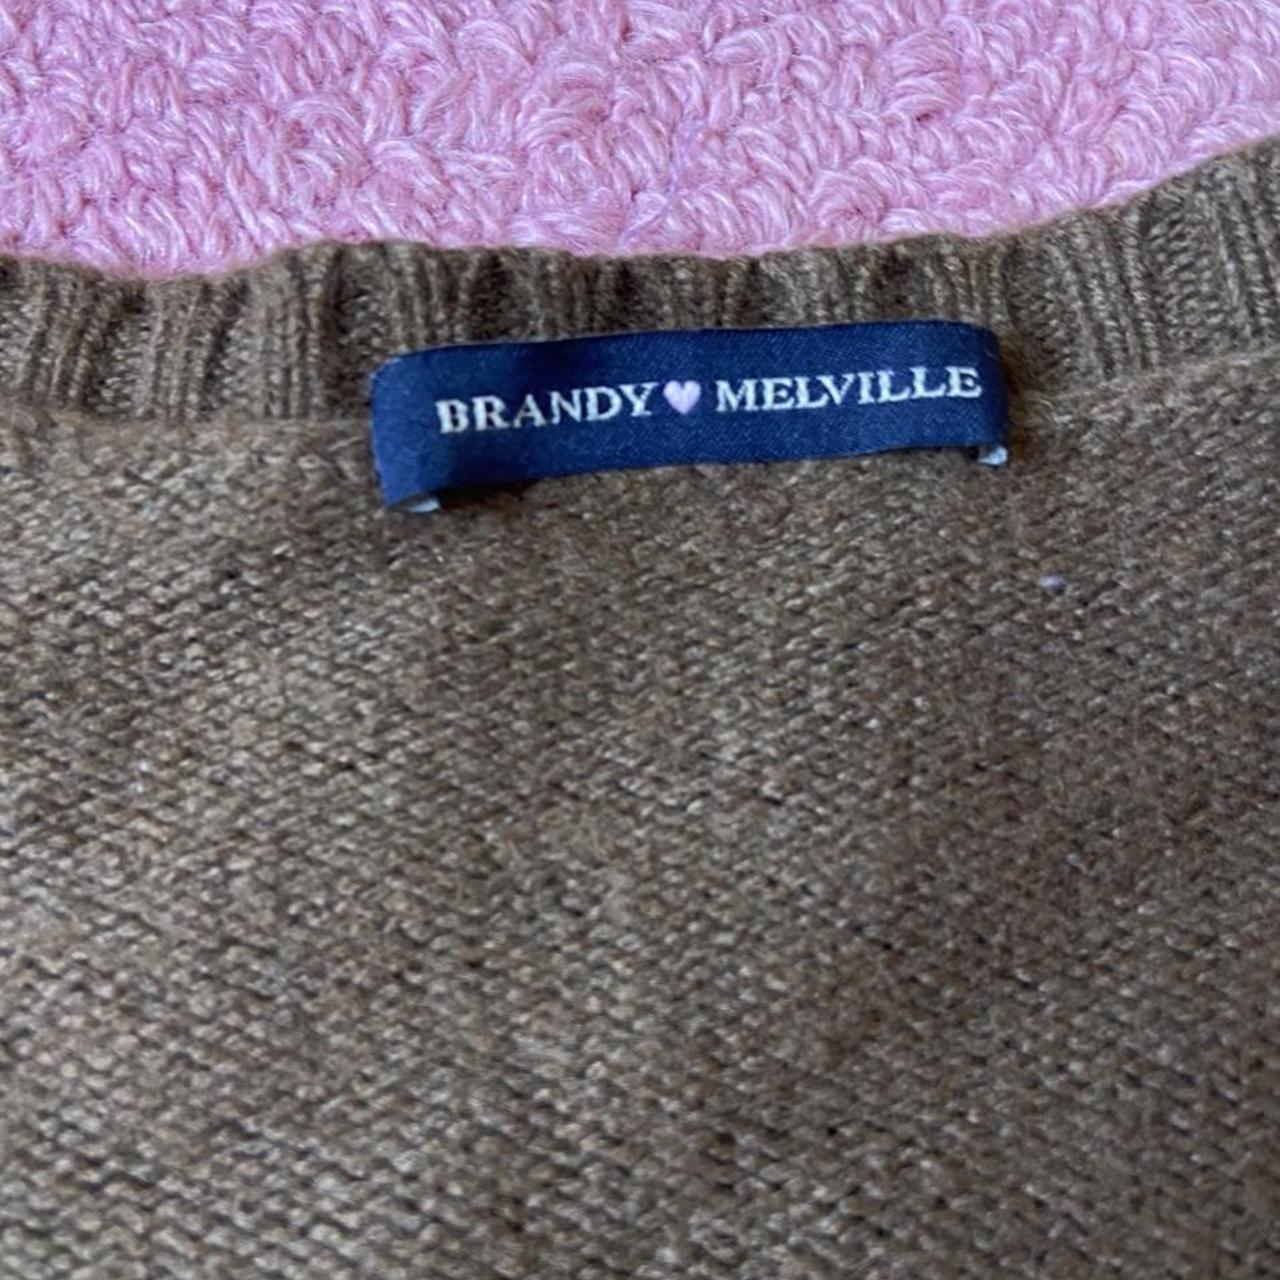 Brandy Melville chocolate brown cardigan 🍫🧸 FREE... - Depop